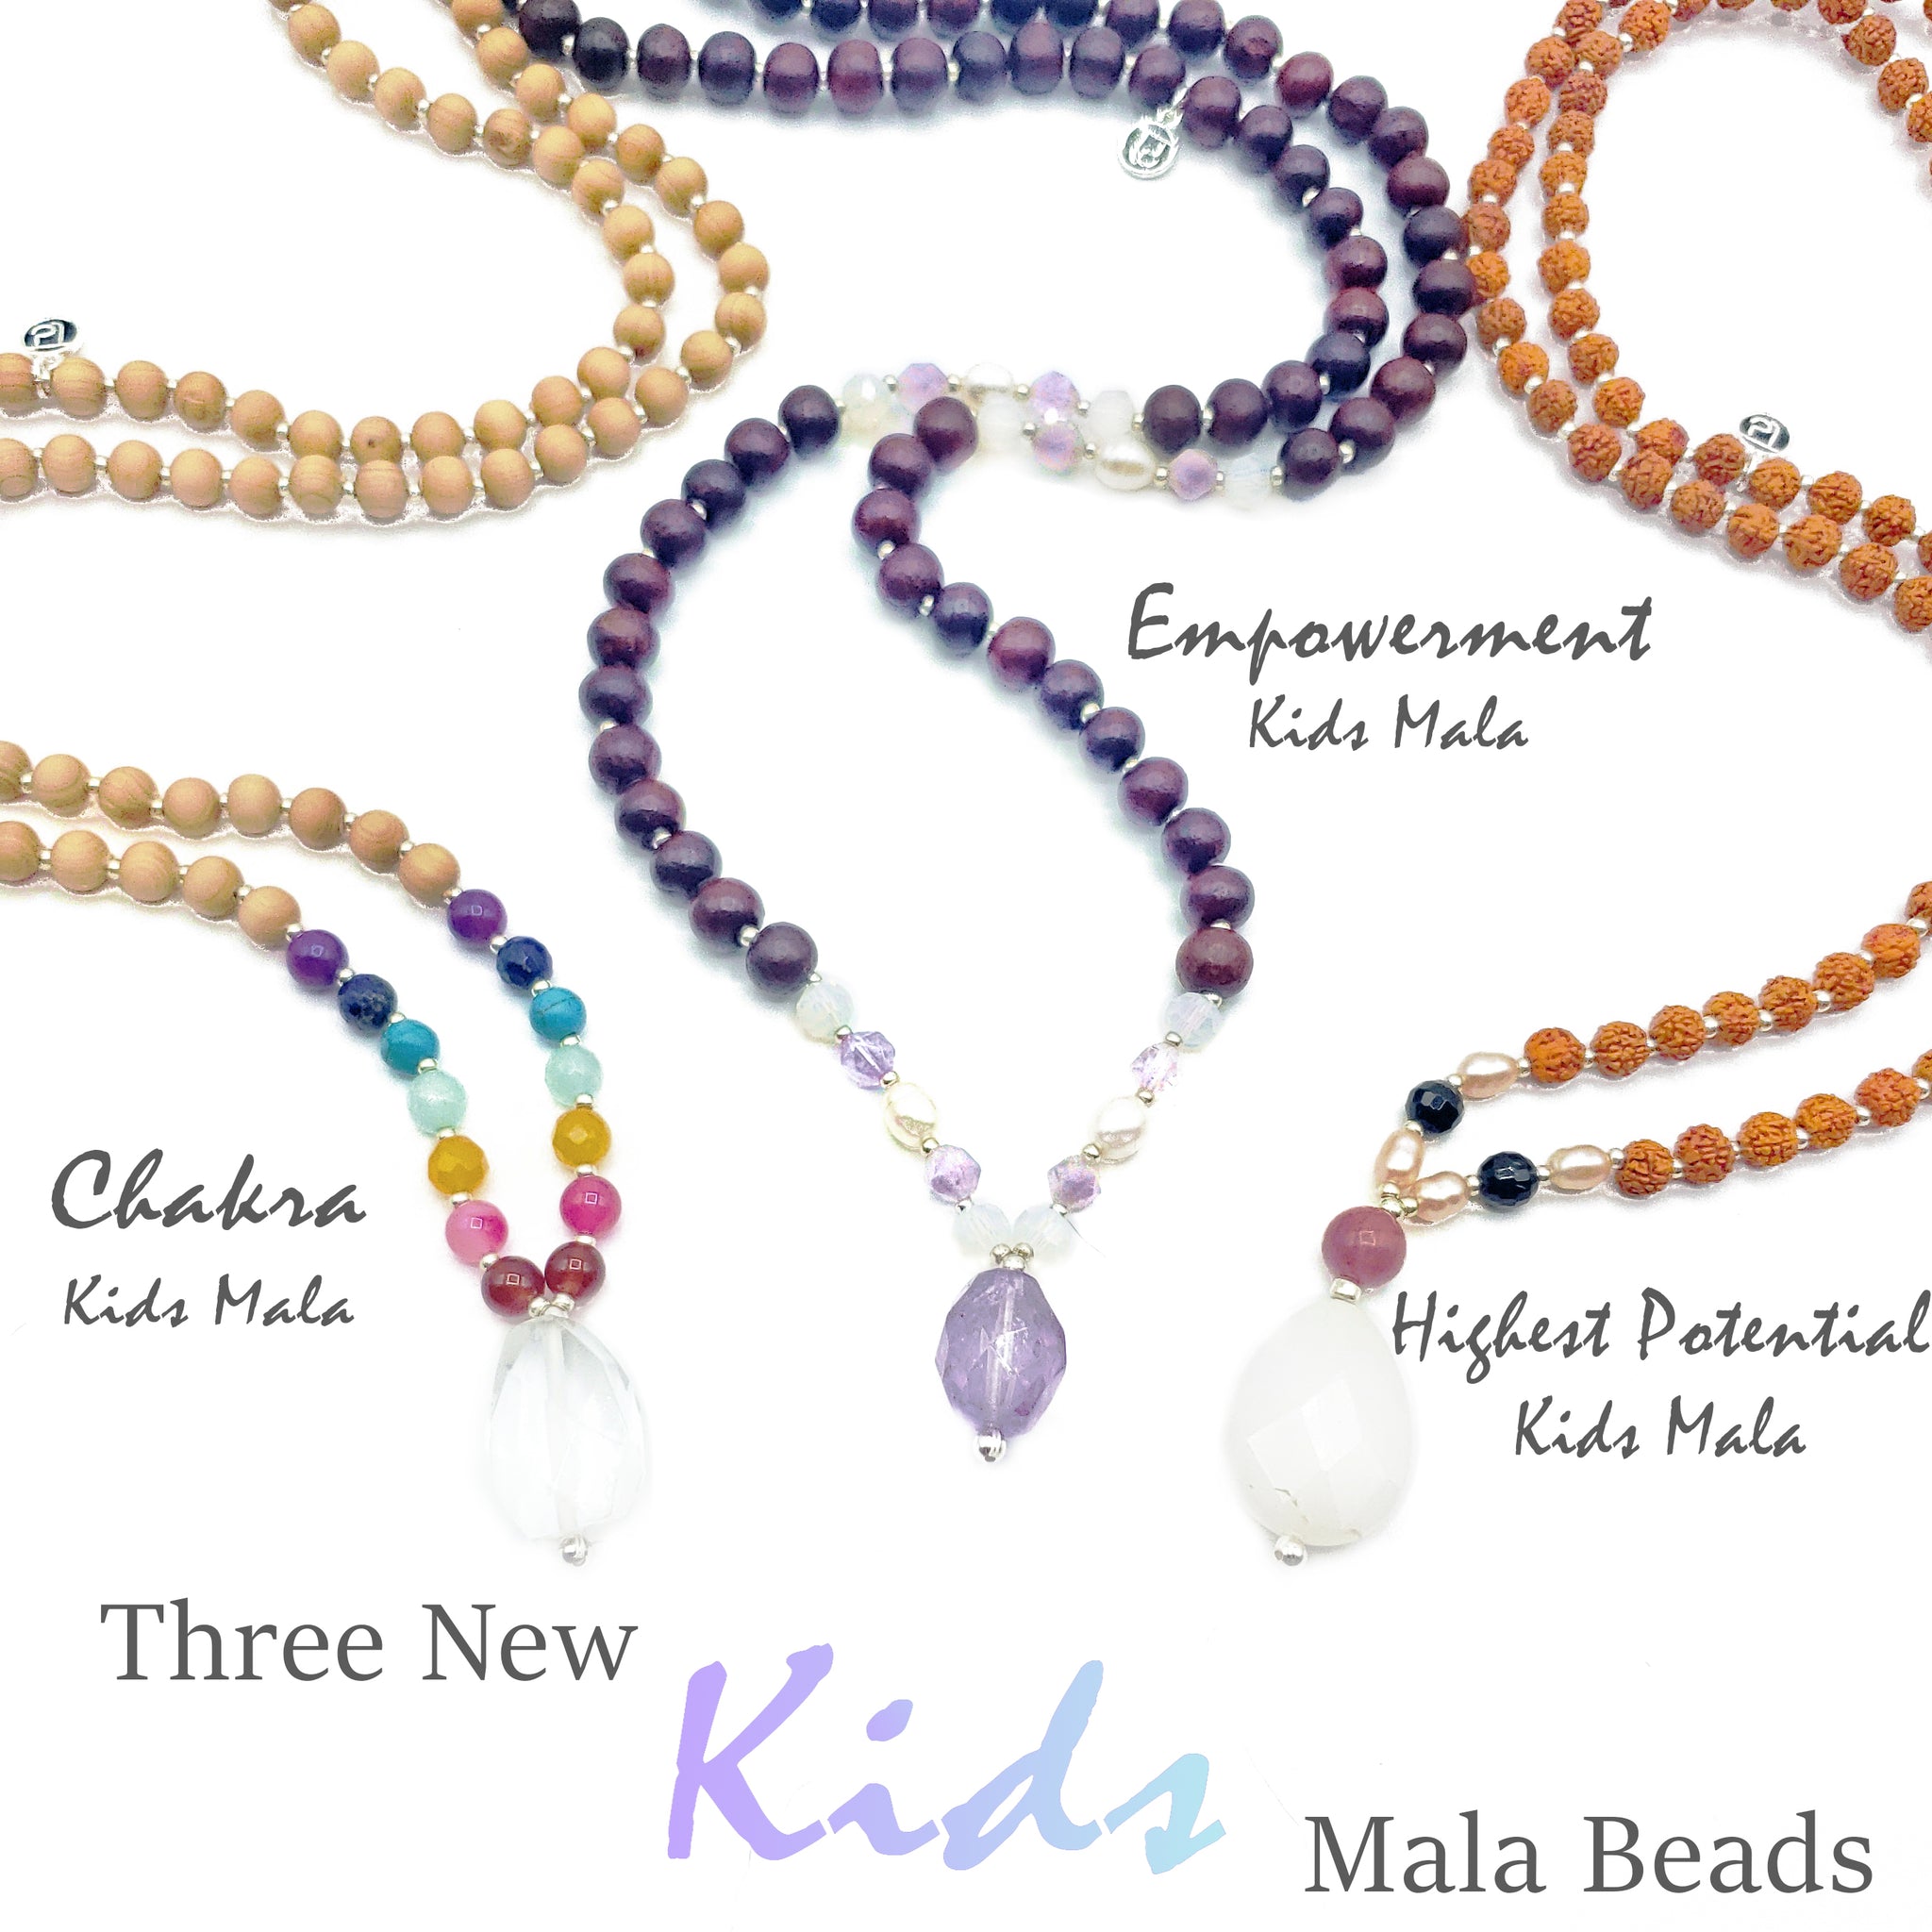 Empowerment Kids Mala Beads.